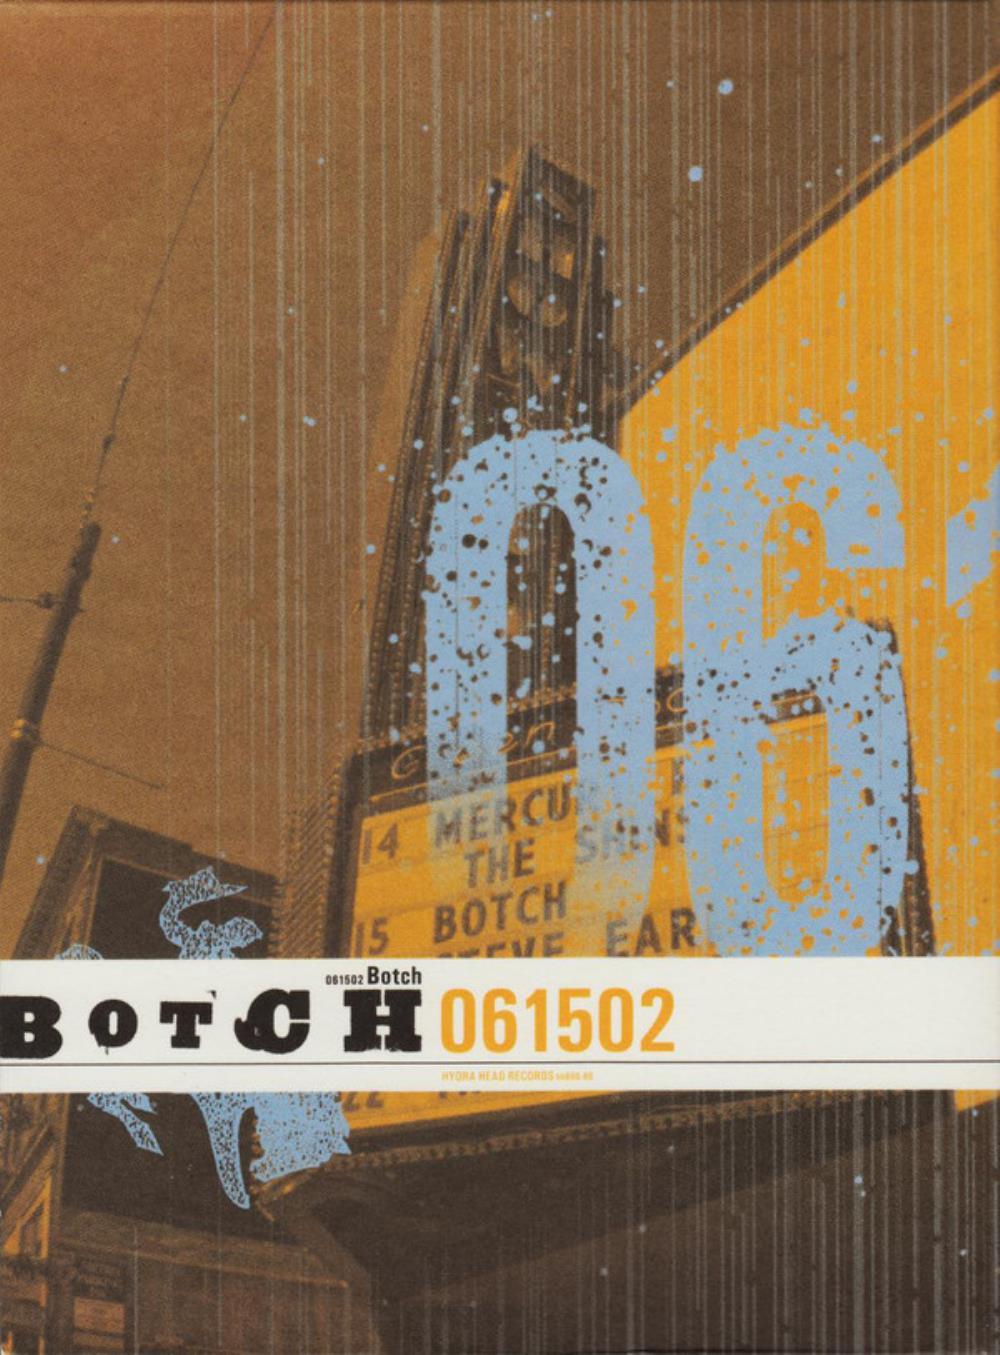 Botch 061502 album cover